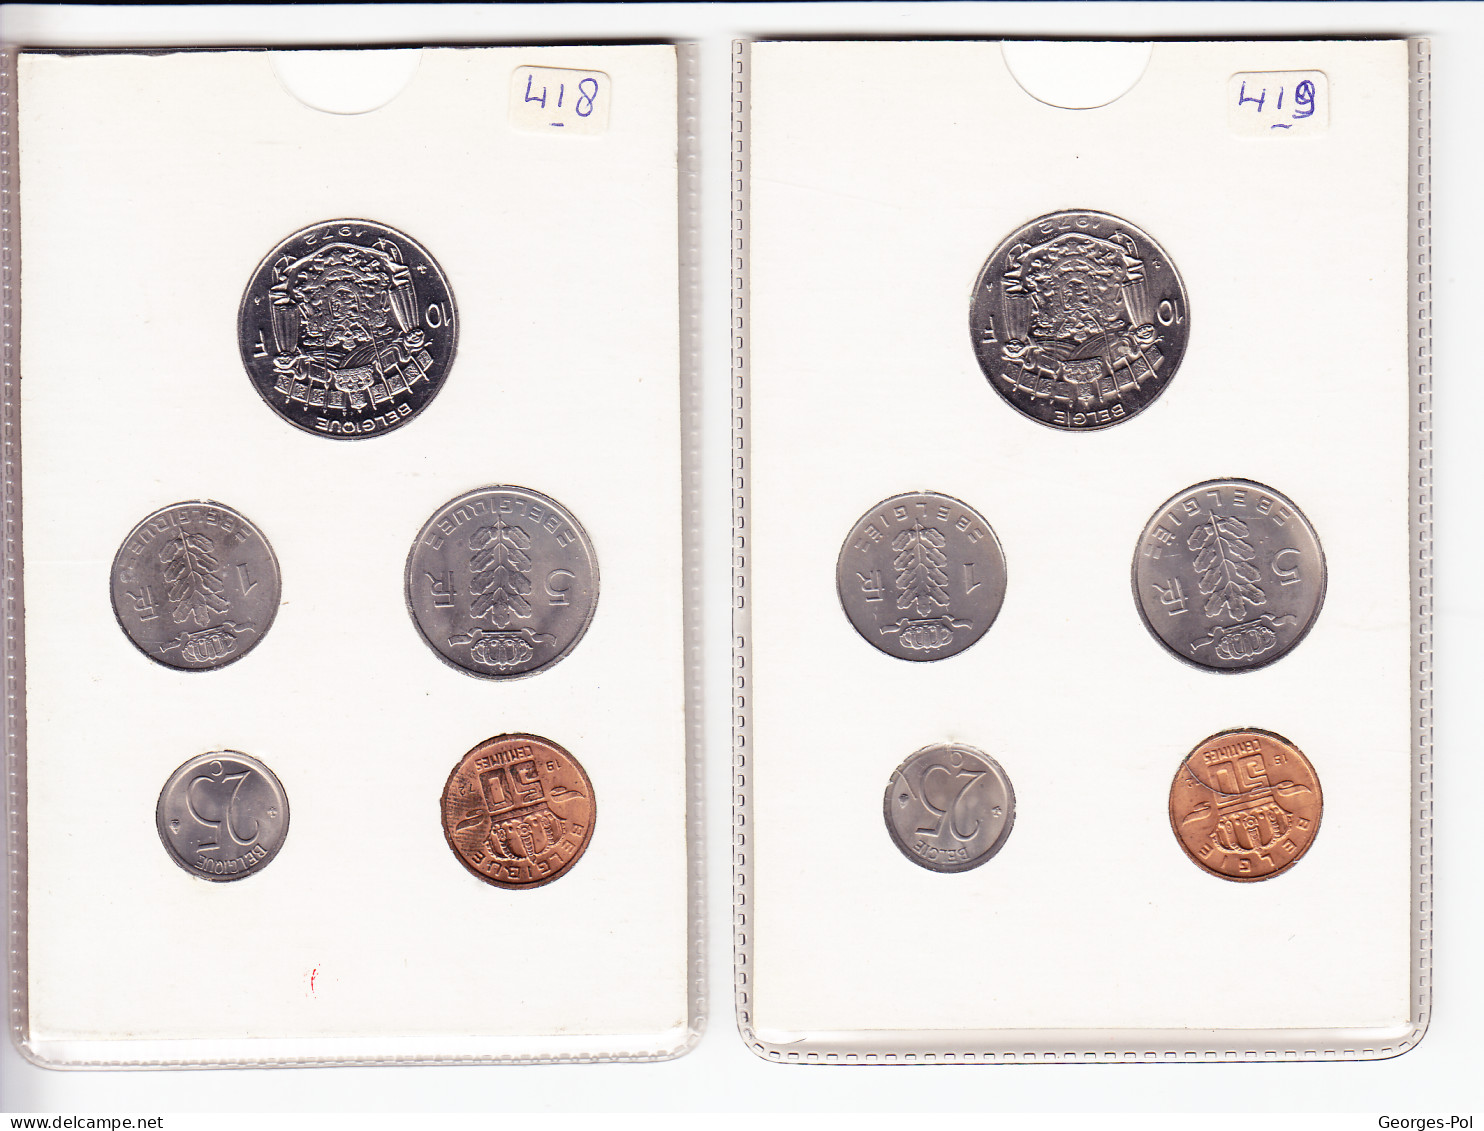 Monnaie Royale De Belgique 1972 Koninklijke Munt Van België. 2 Cartes De 5 Pièces Non Circulées - FDC, BU, Proofs & Presentation Cases